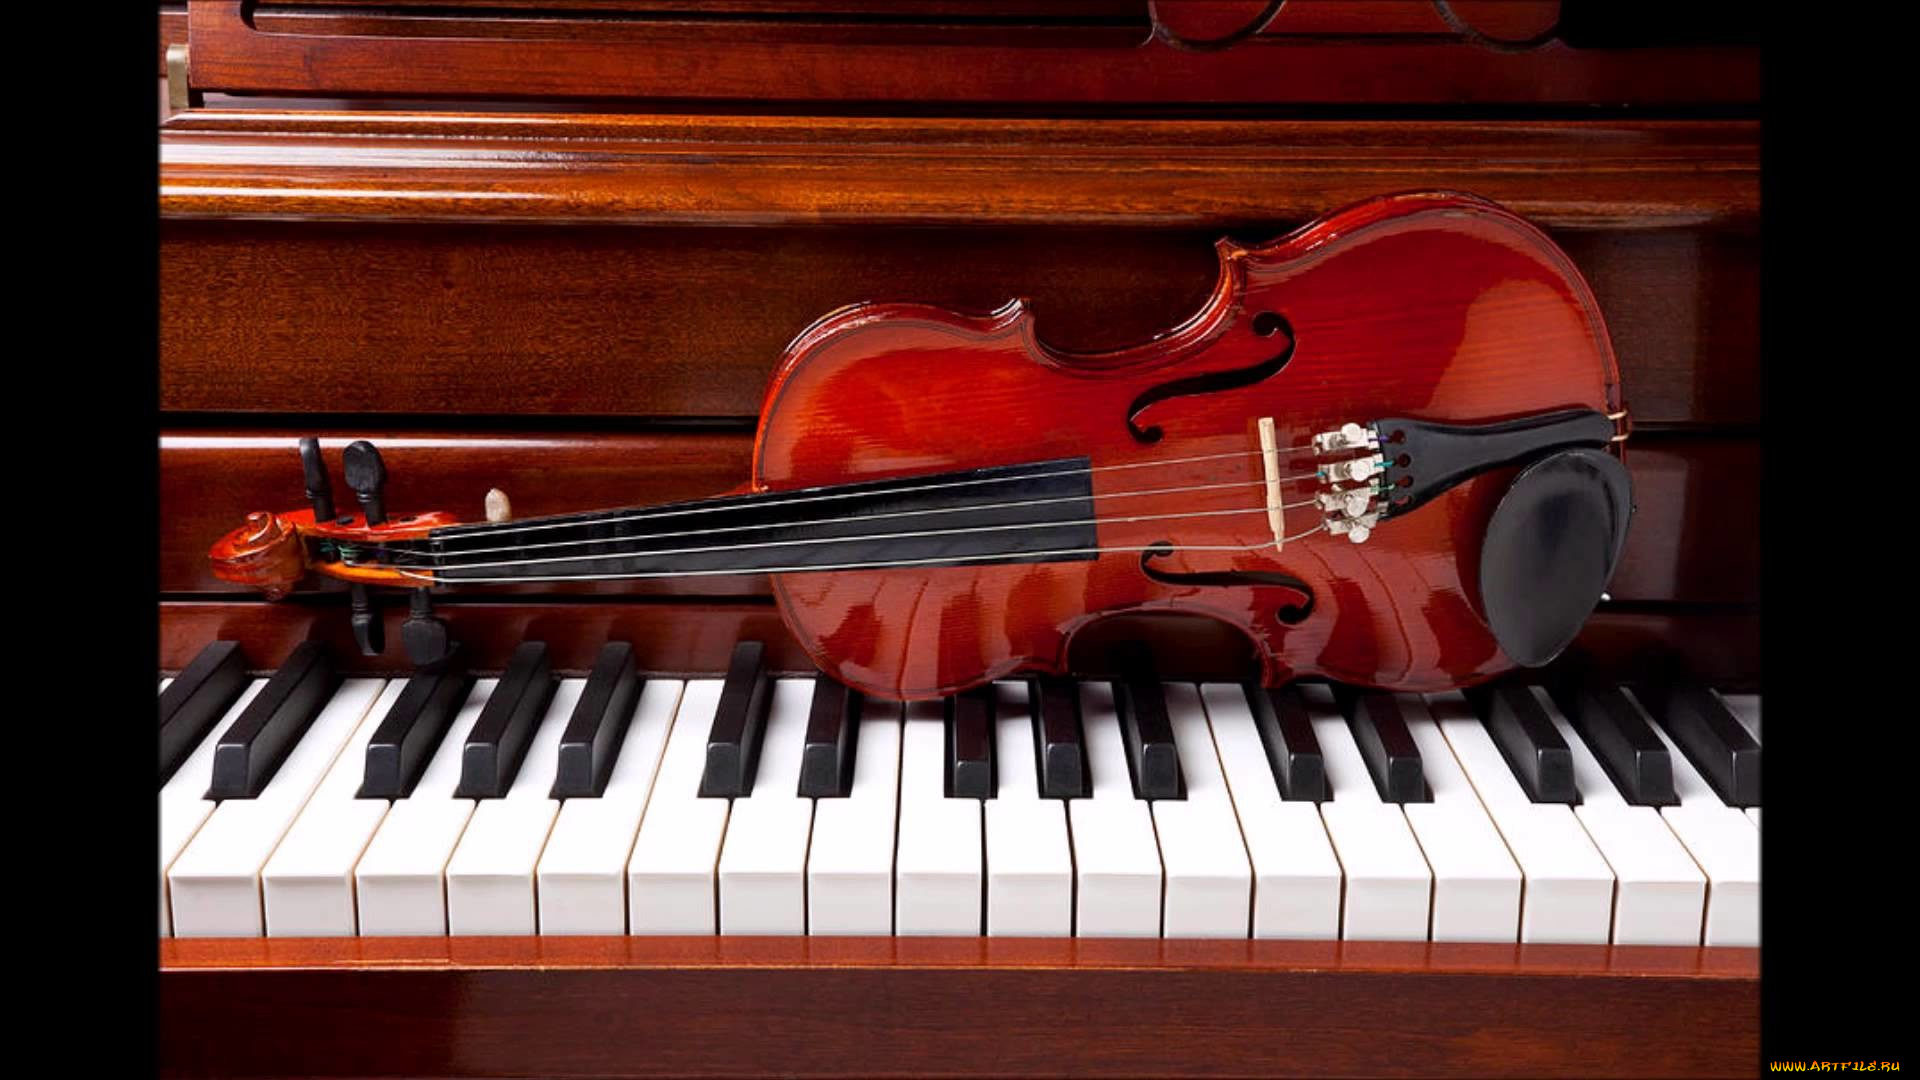 Violin музыка. Виолин и пиано. Классические музыкальные инструменты. Классическая скрипка. Пианино музыкальный инструмент.